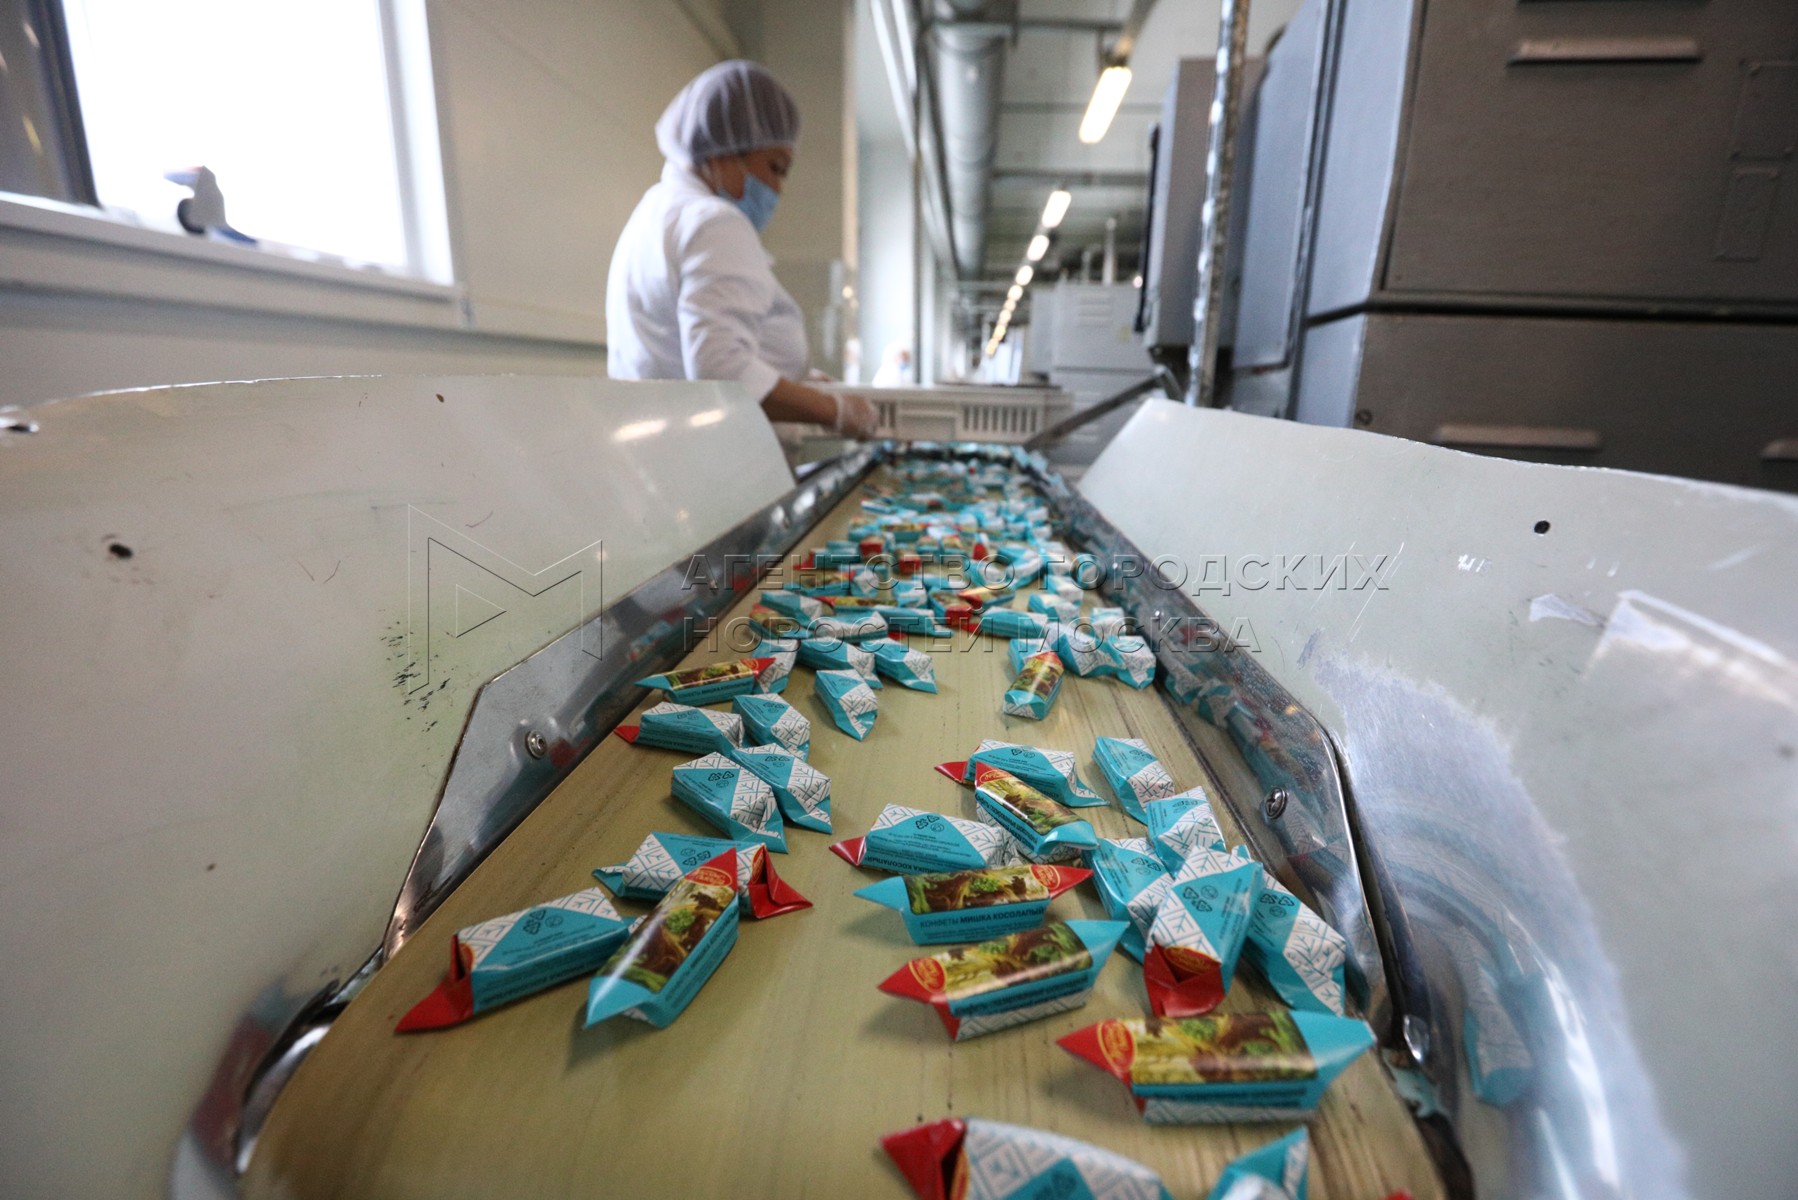 шоколадная фабрика в москве экскурсия бабаевский